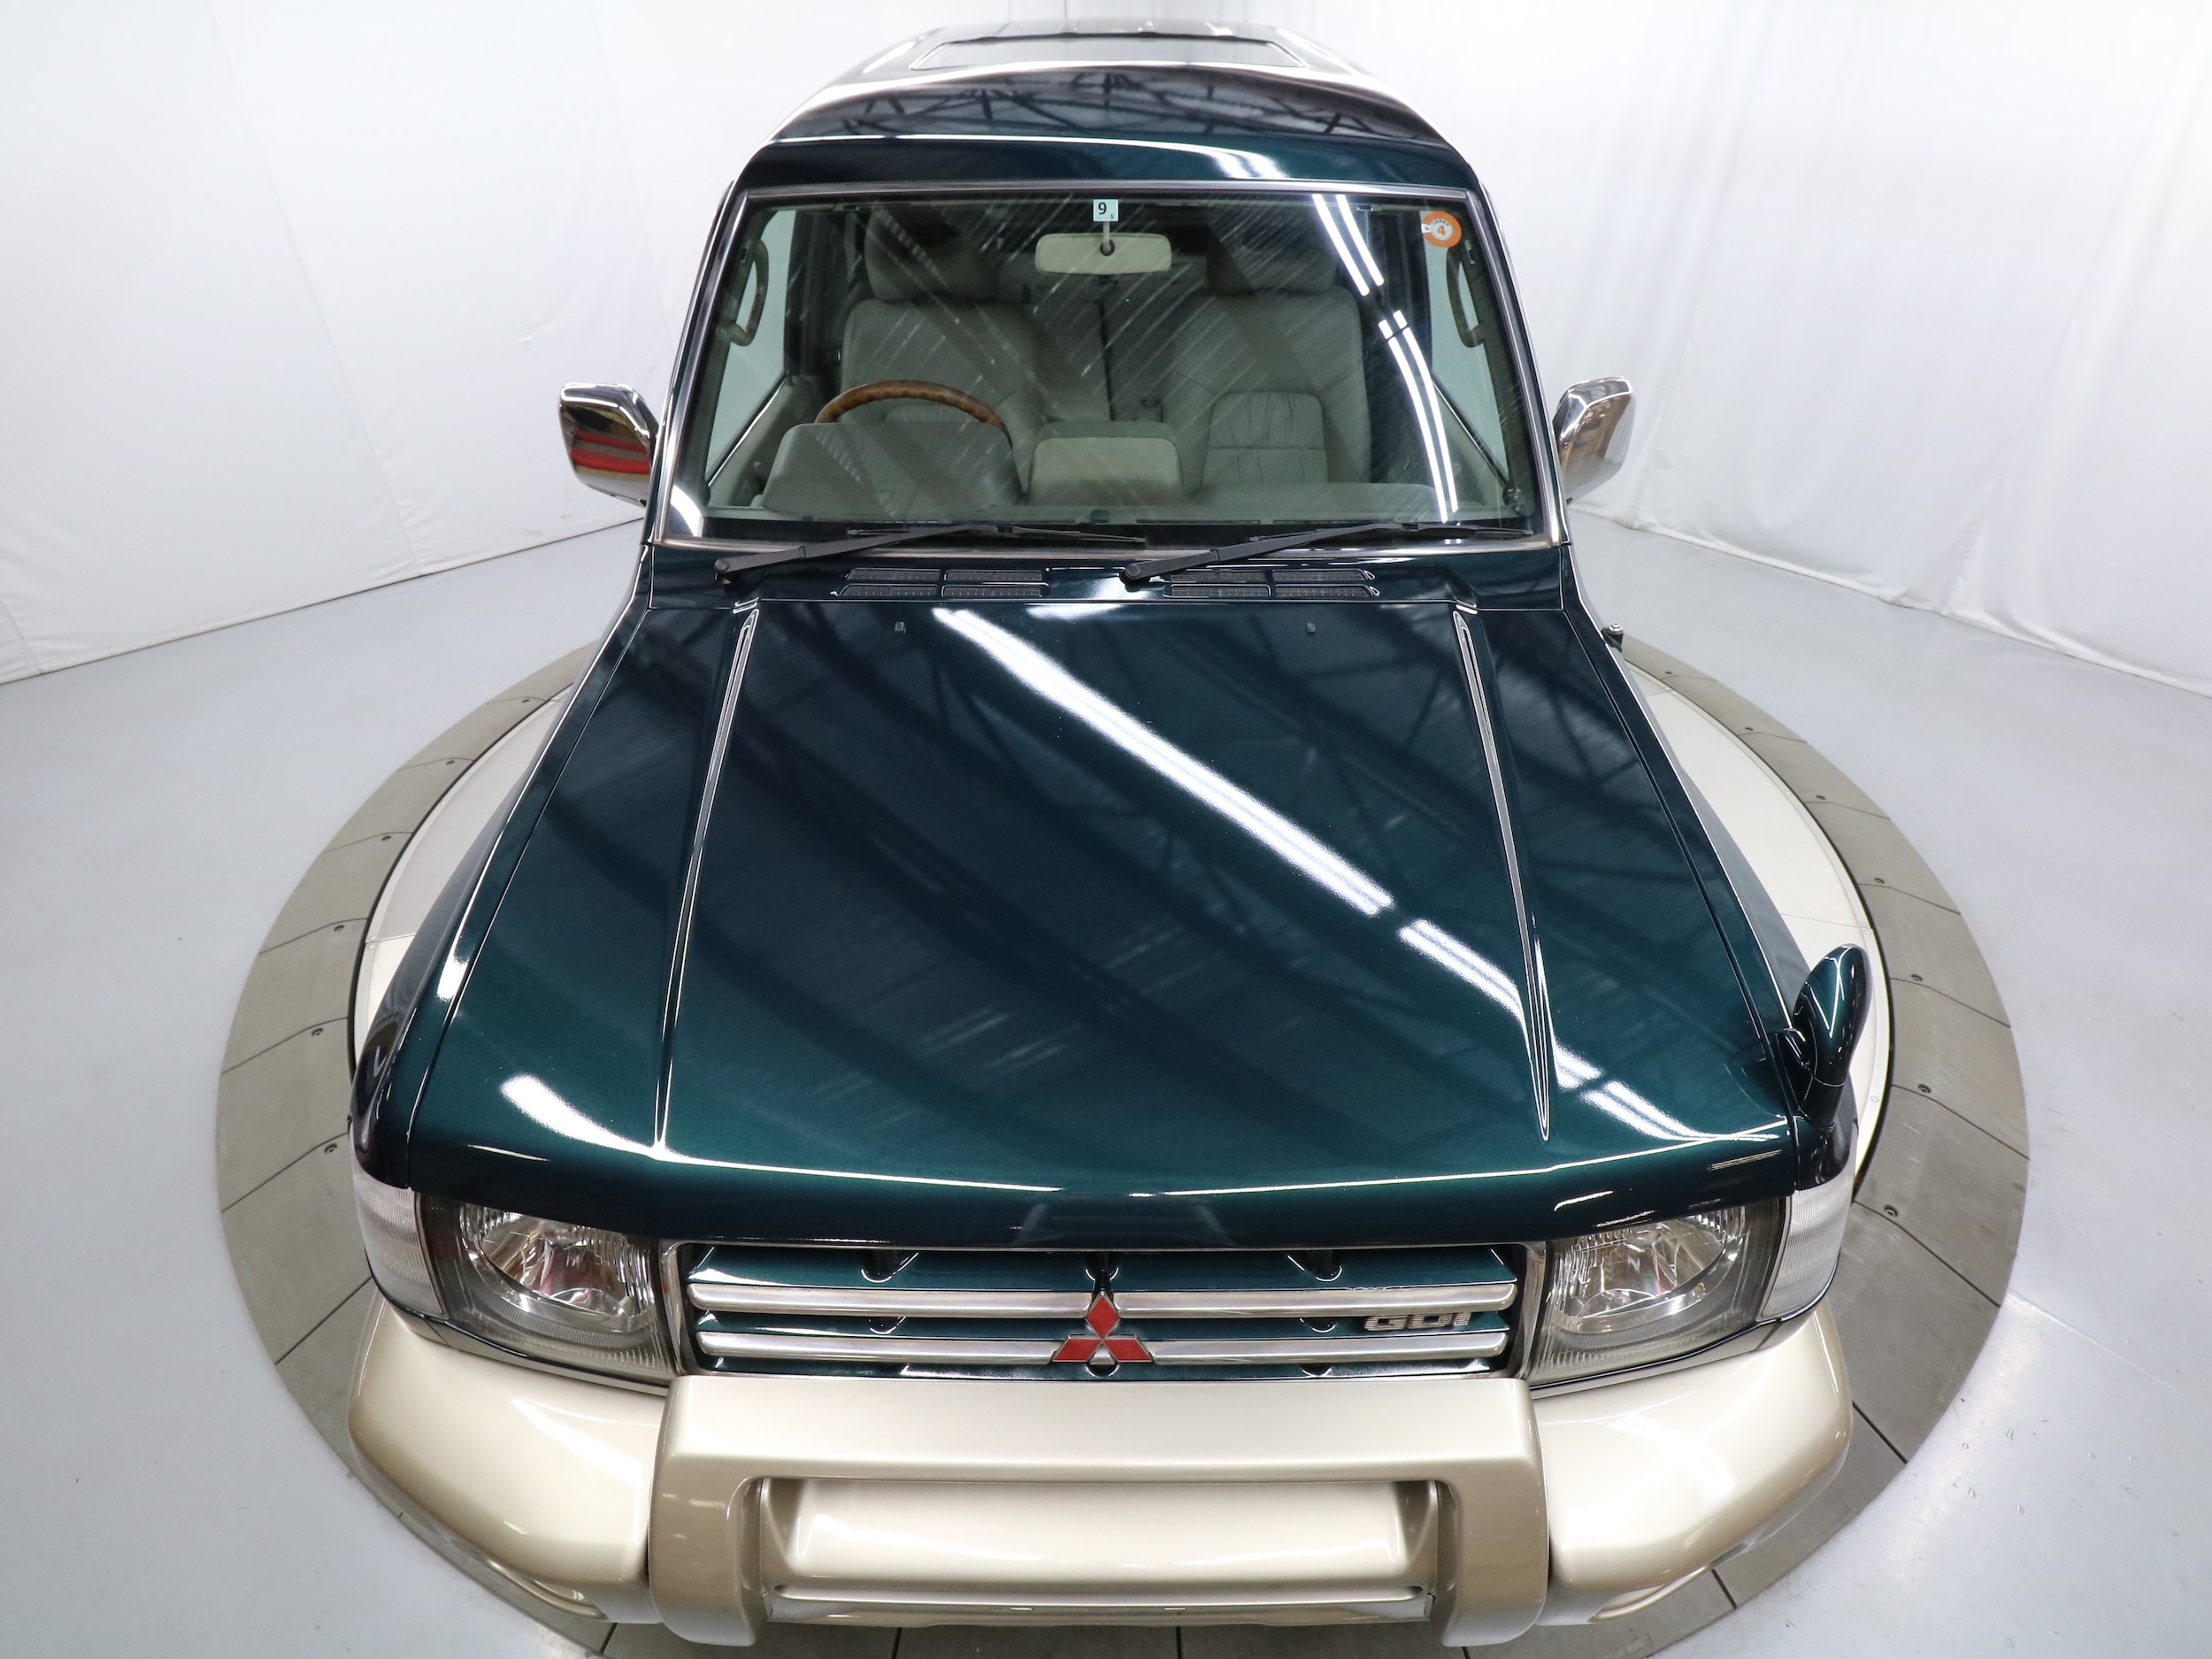 1997 Mitsubishi Pajero 44